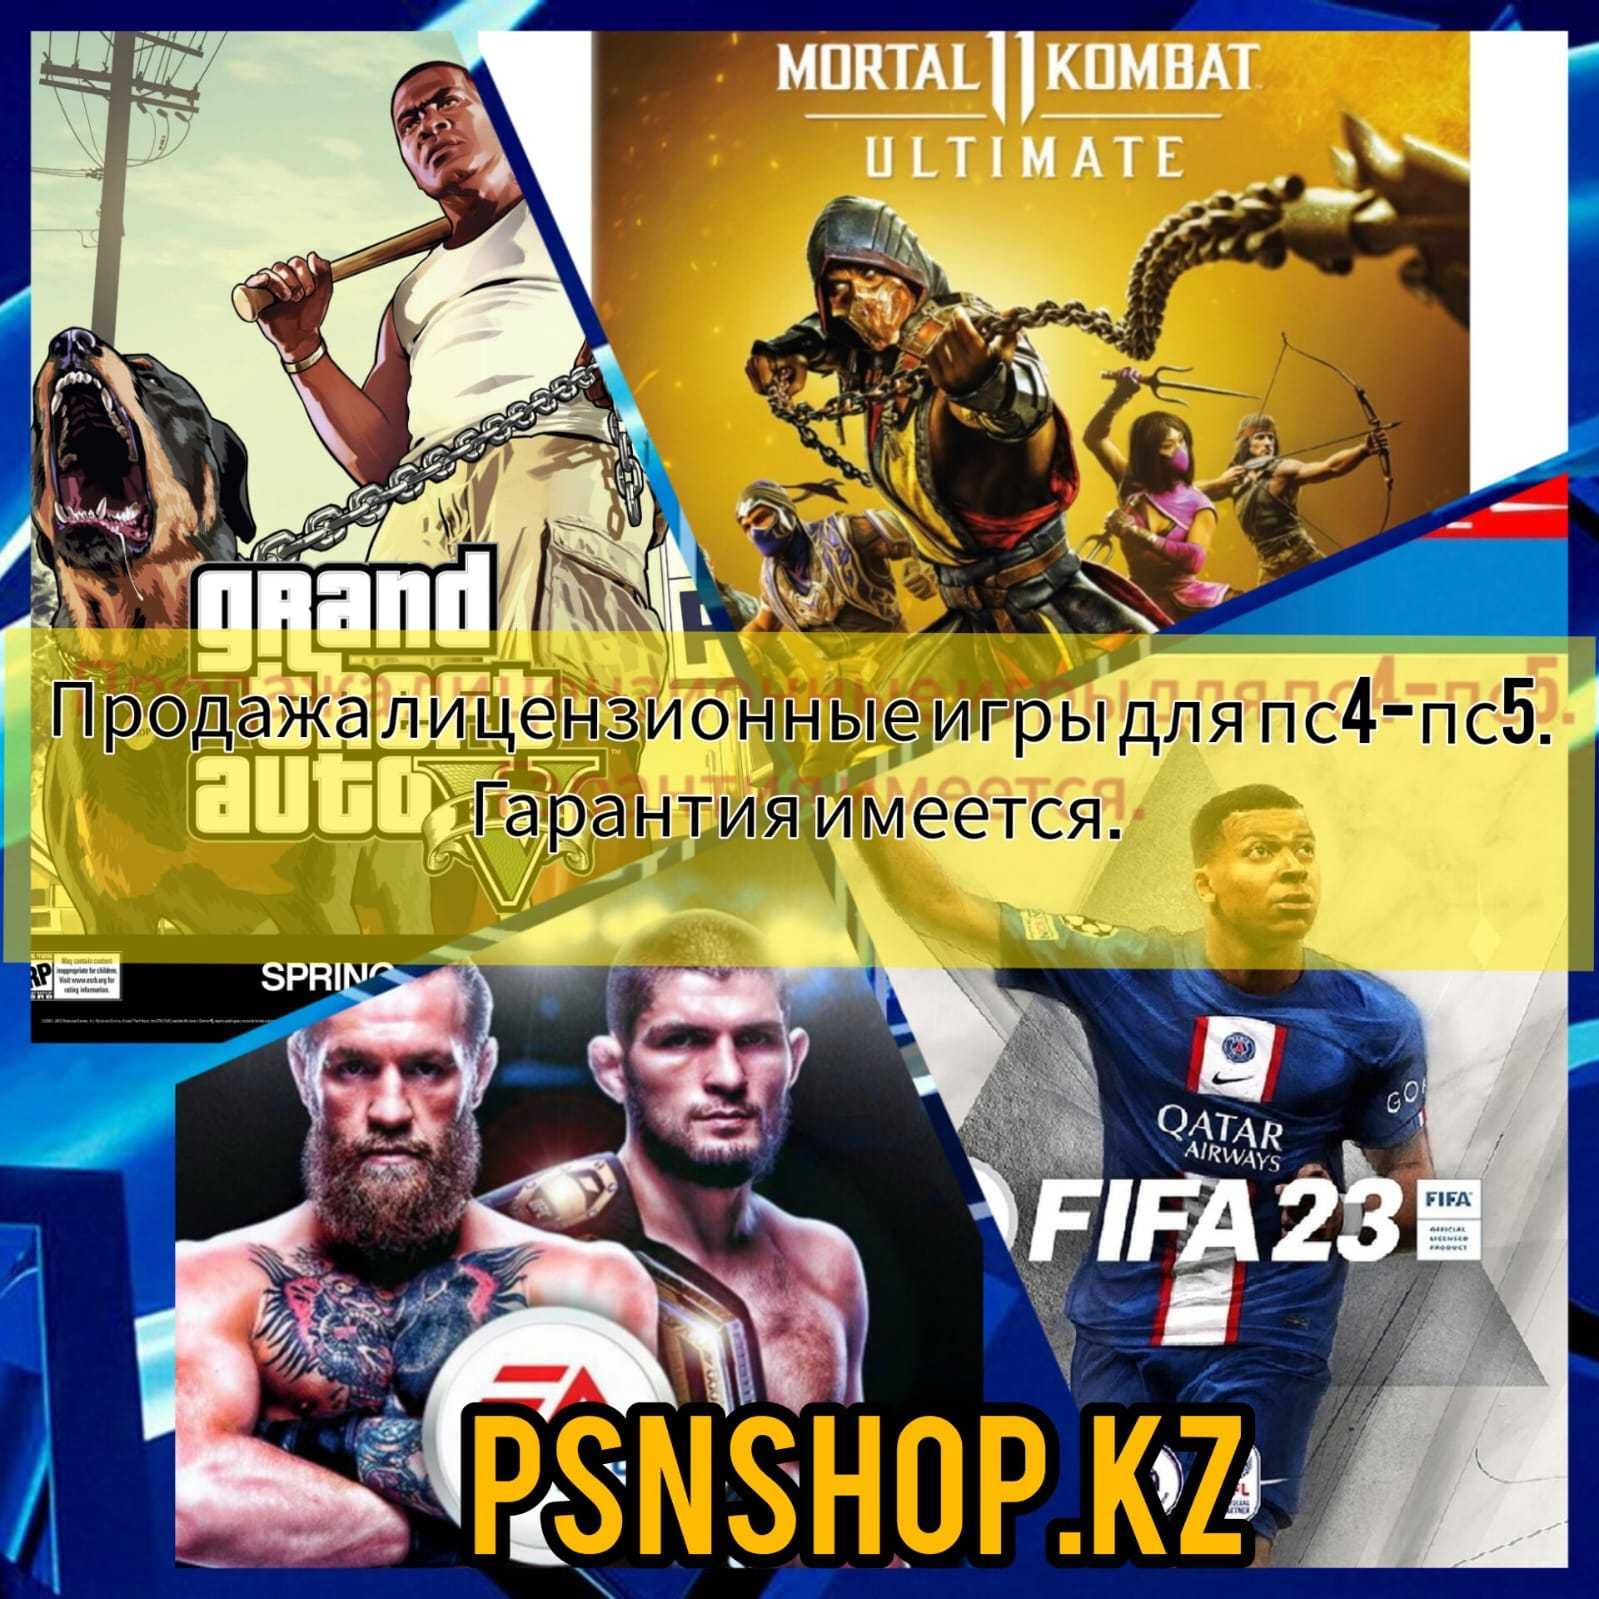 Игры на пс4 пс5 PS5,PS4 FIFA 22, UFC 4,MK 11,GTA V